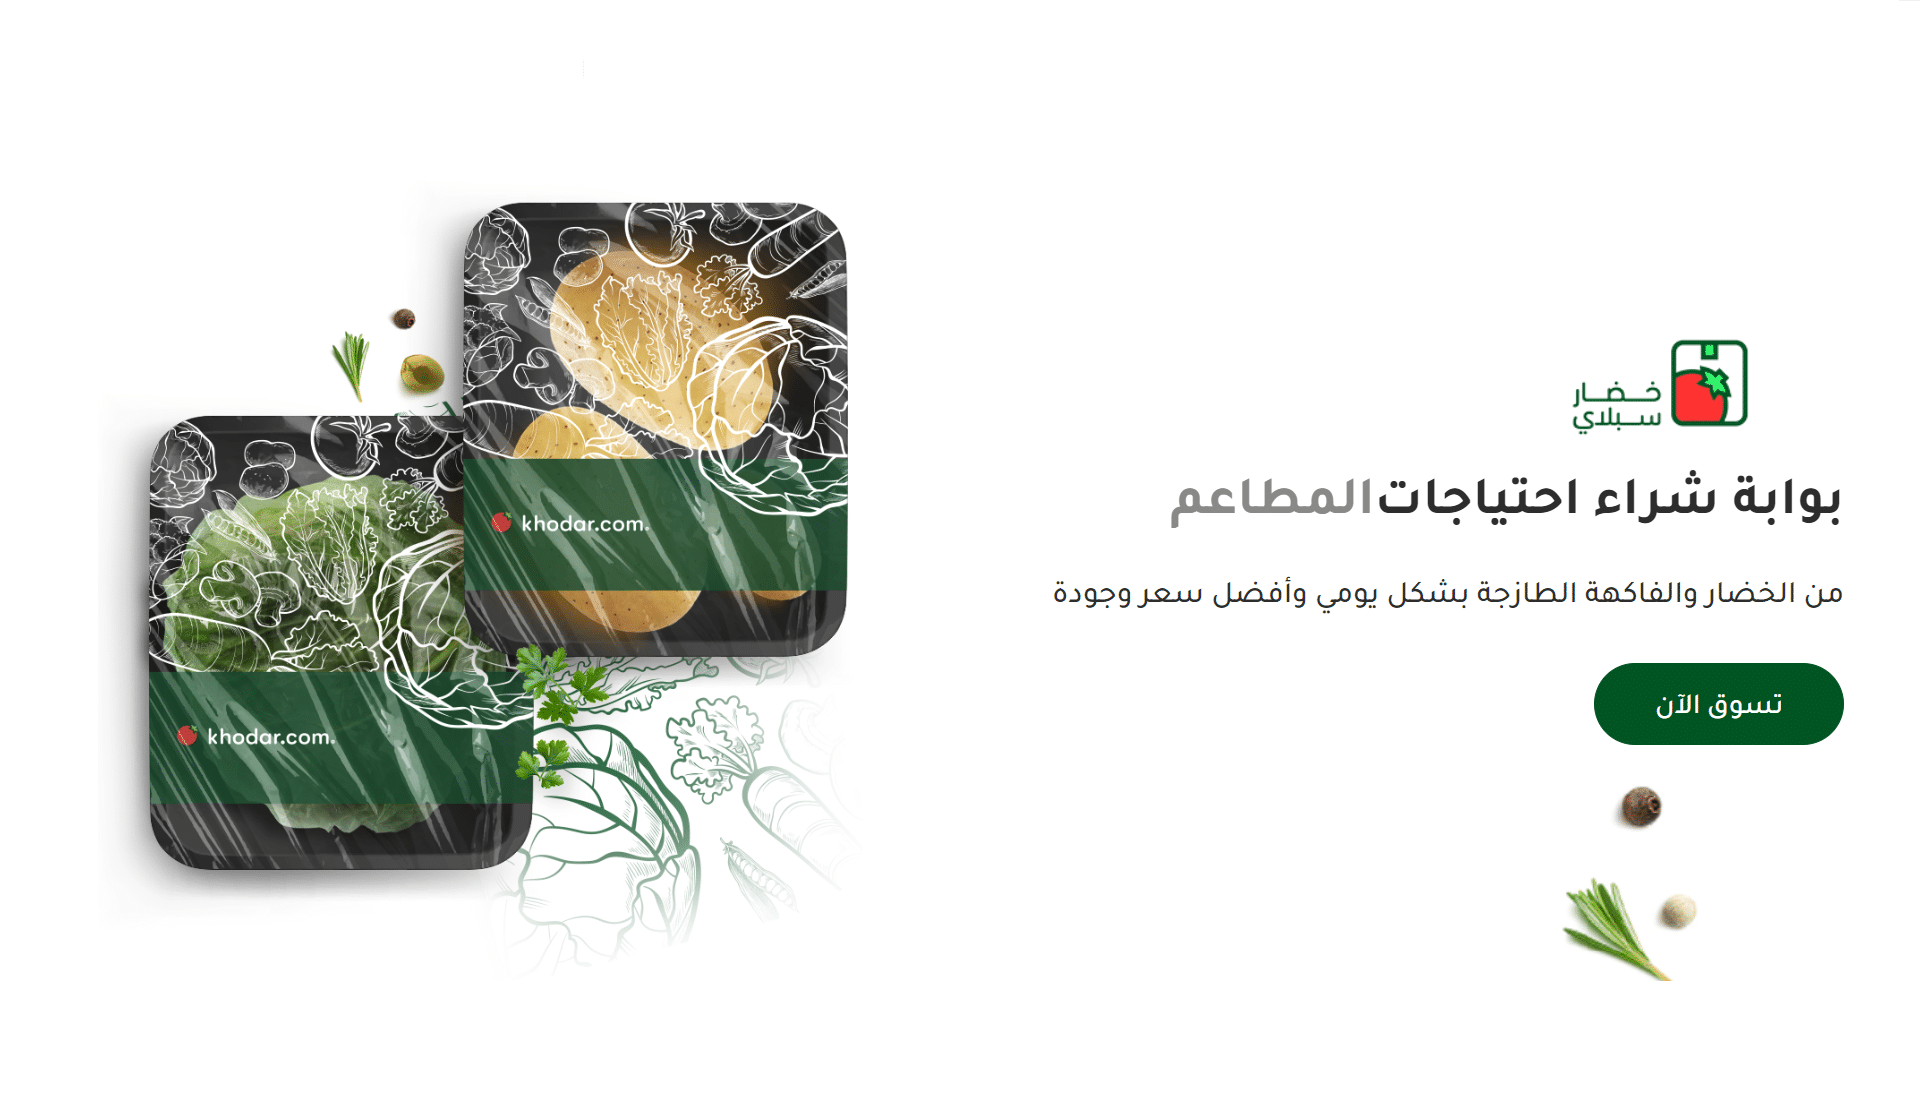 خضار.كوم تطلق منصة تتيح للمزارعين تسويق منتجاتهم عبر الإنترنت